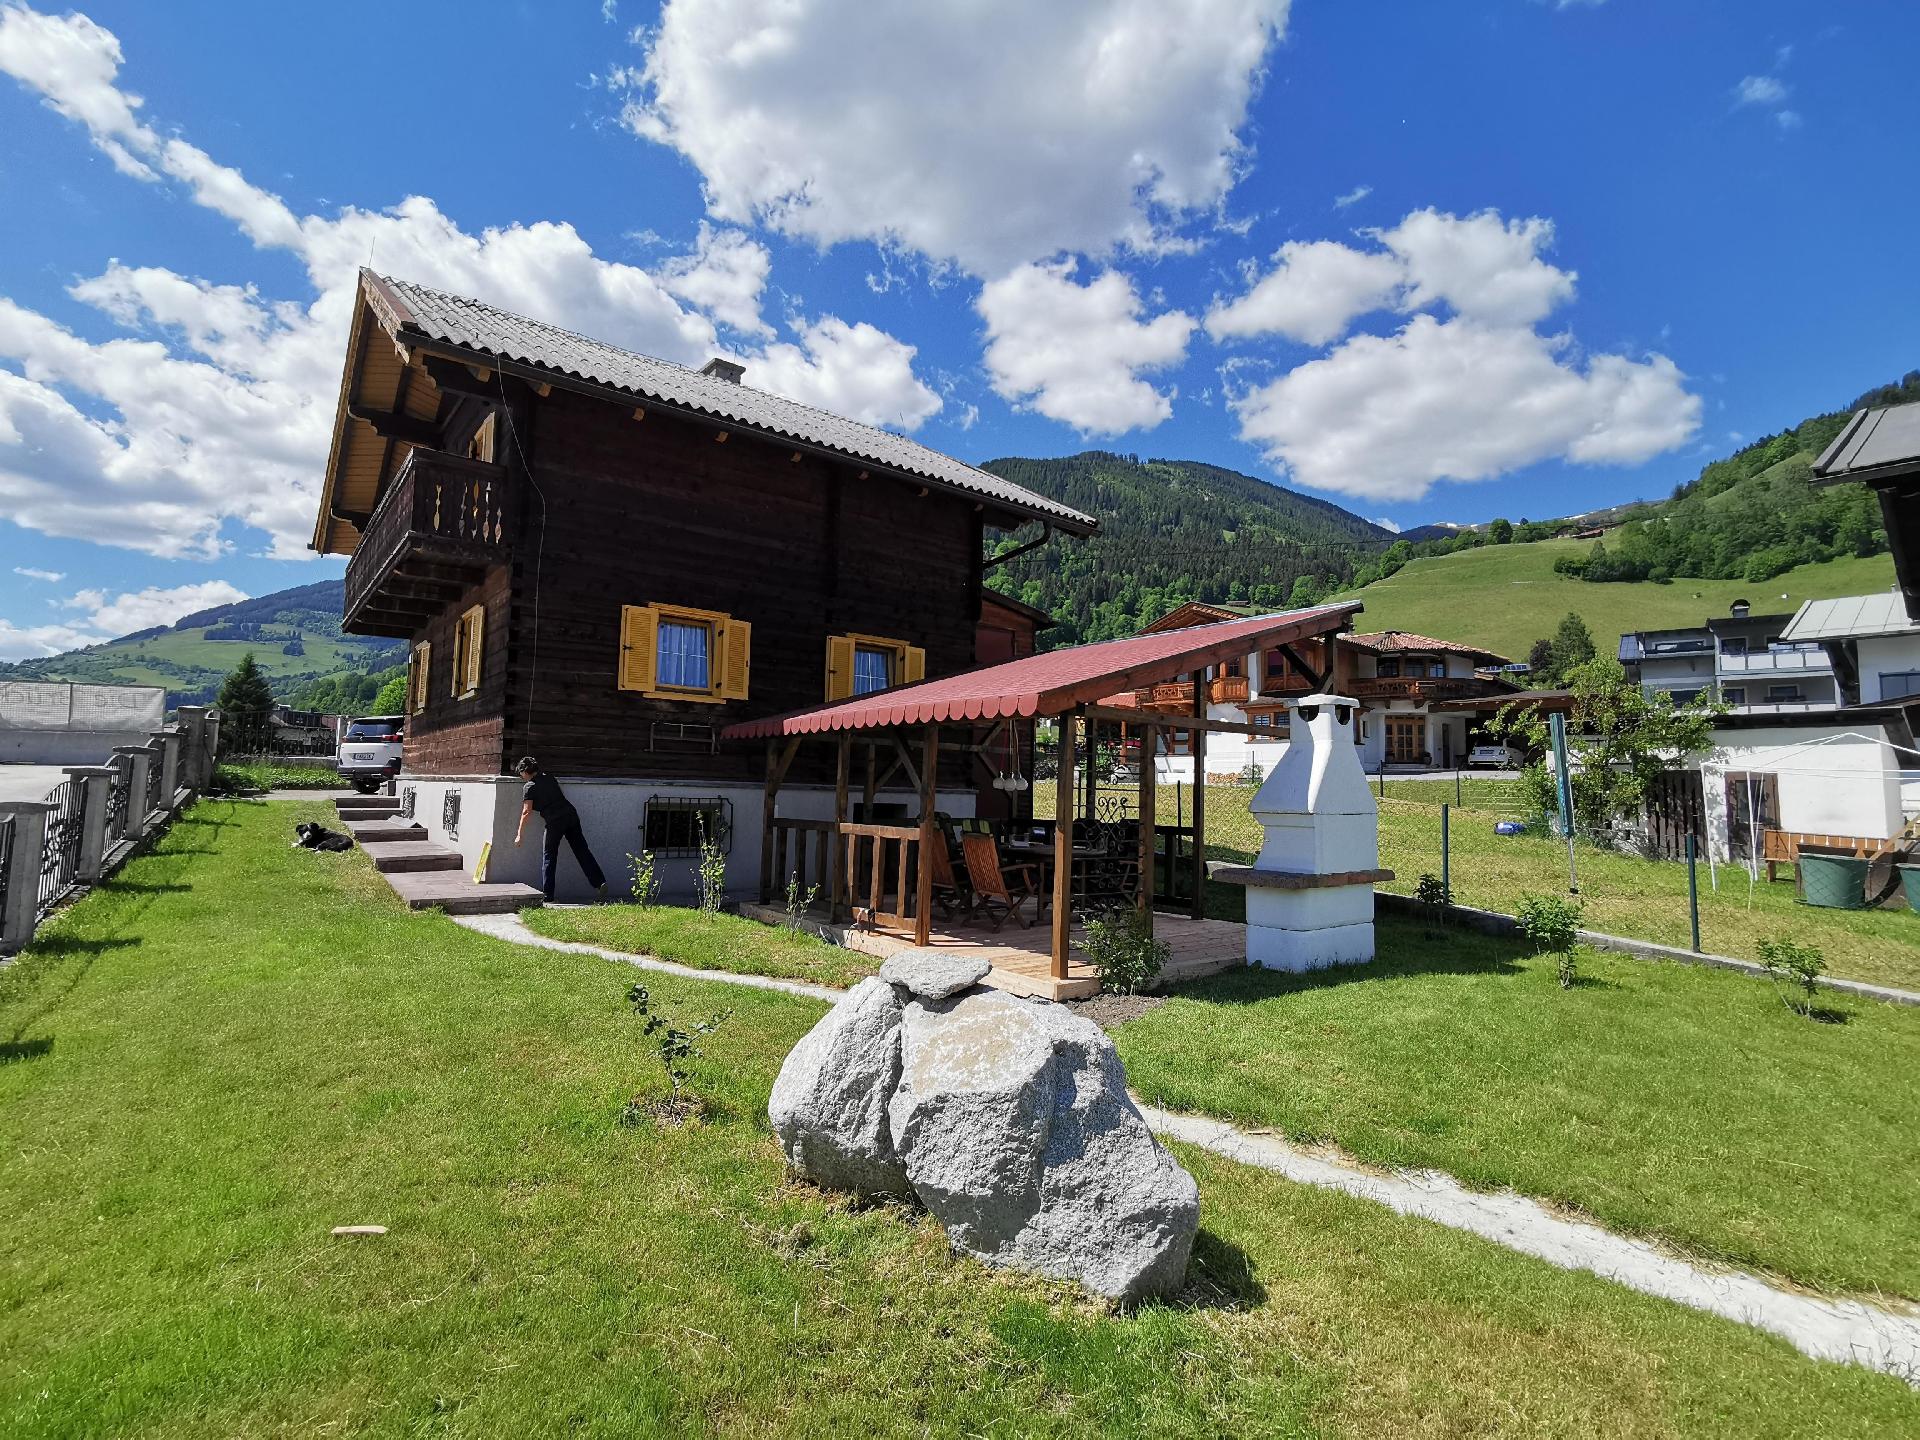 Ferienhaus in Uttendorf mit Grill, Garten und Terr   Salzburger Land